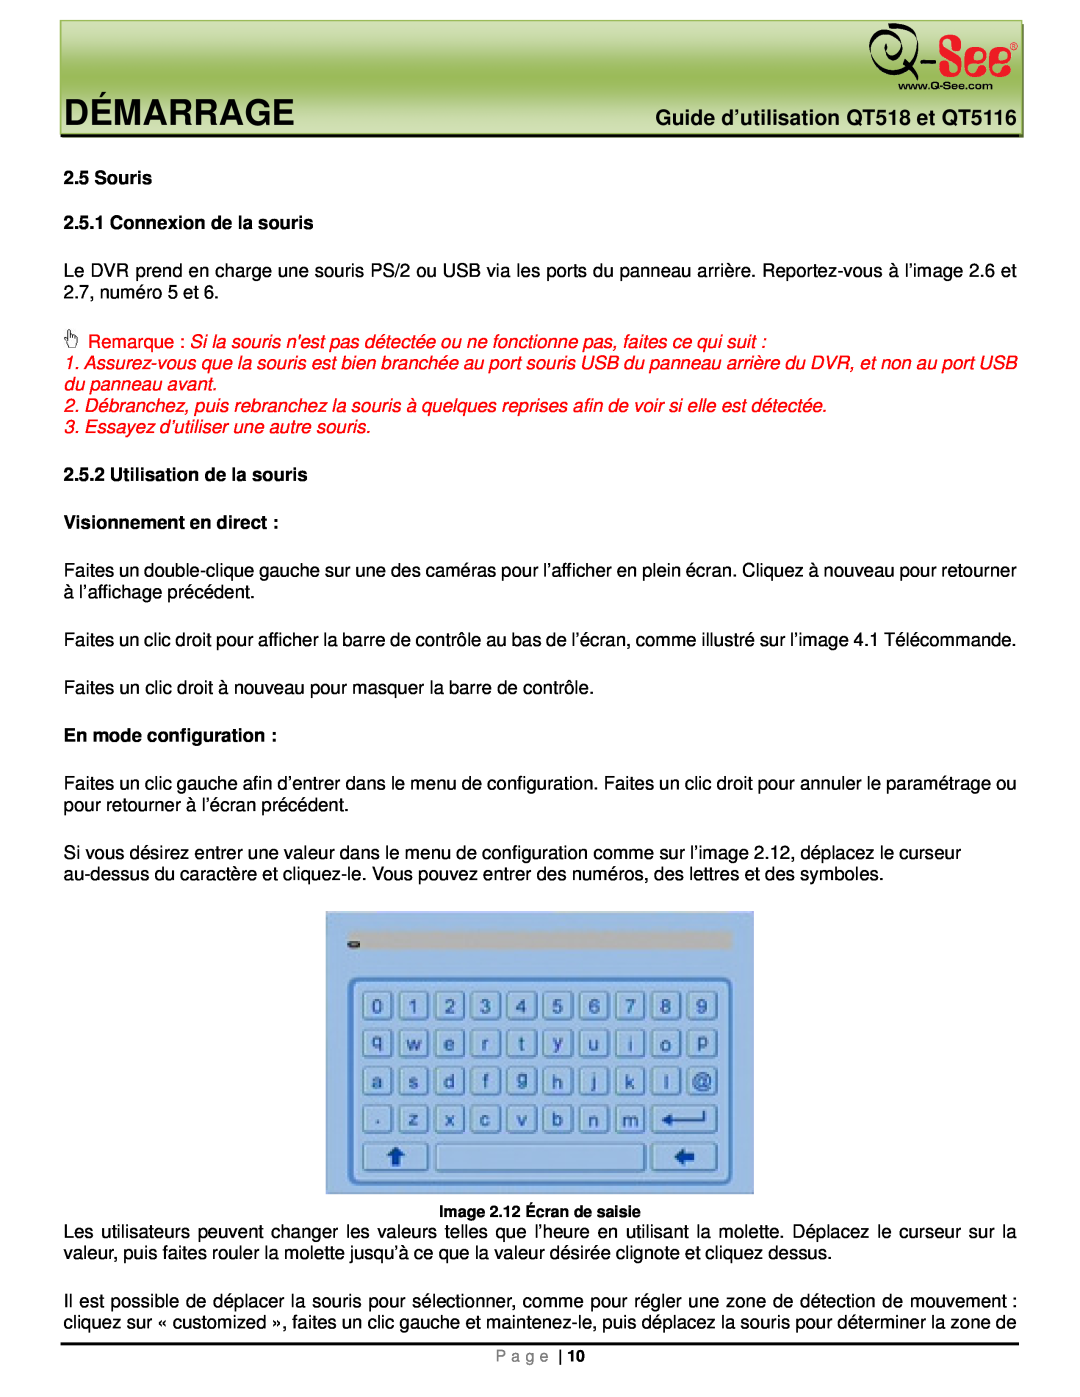 Q-See manual Démarrage, Guide d’utilisation QT518 et QT5116, Souris 2.5.1 Connexion de la souris, En mode configuration 